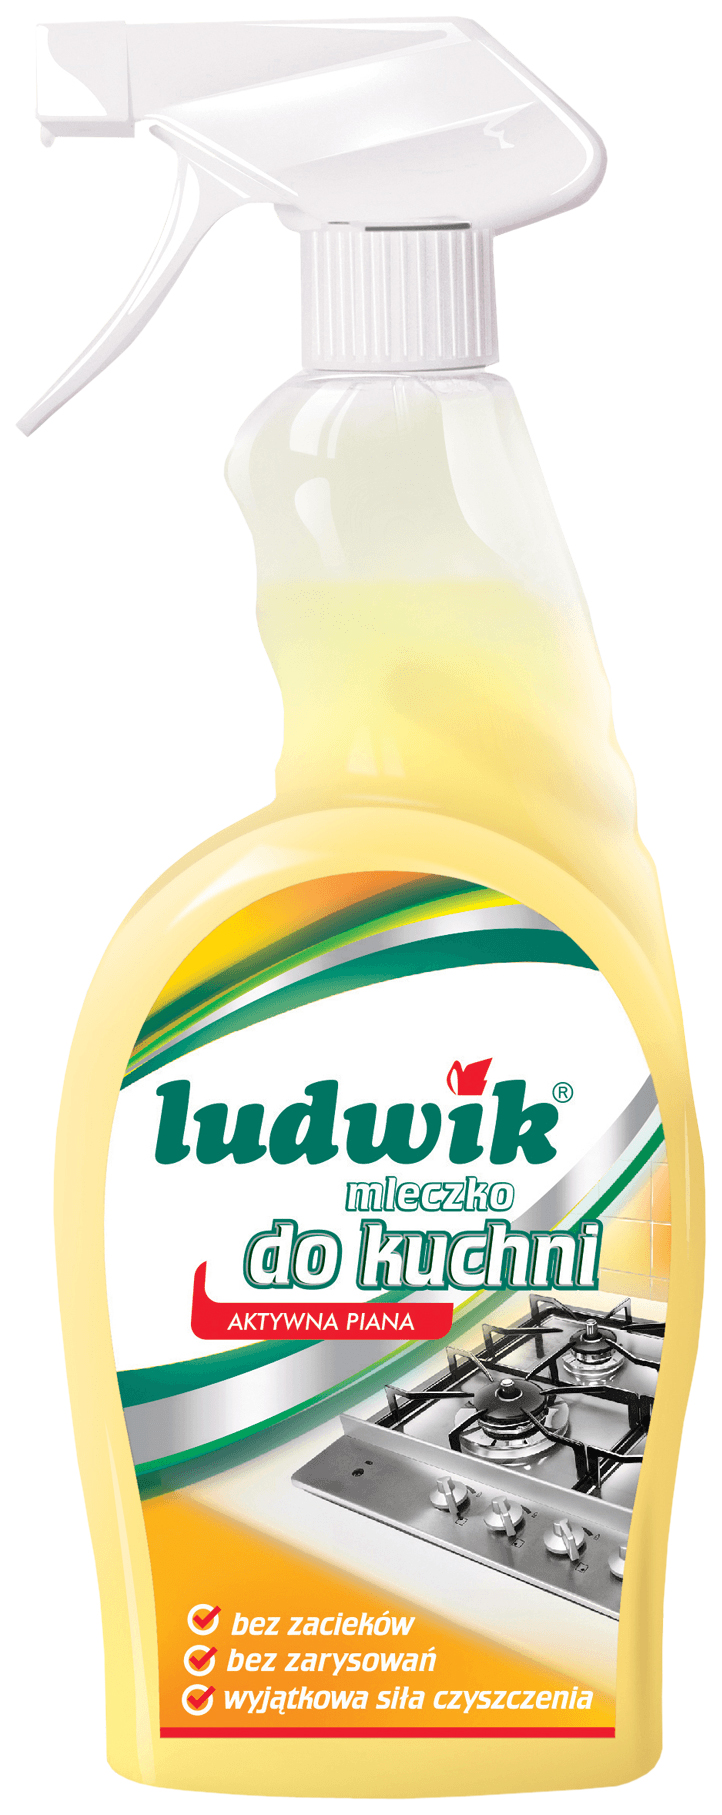 фото Универсальное чистящее средство ludwik для кухни 750 мл